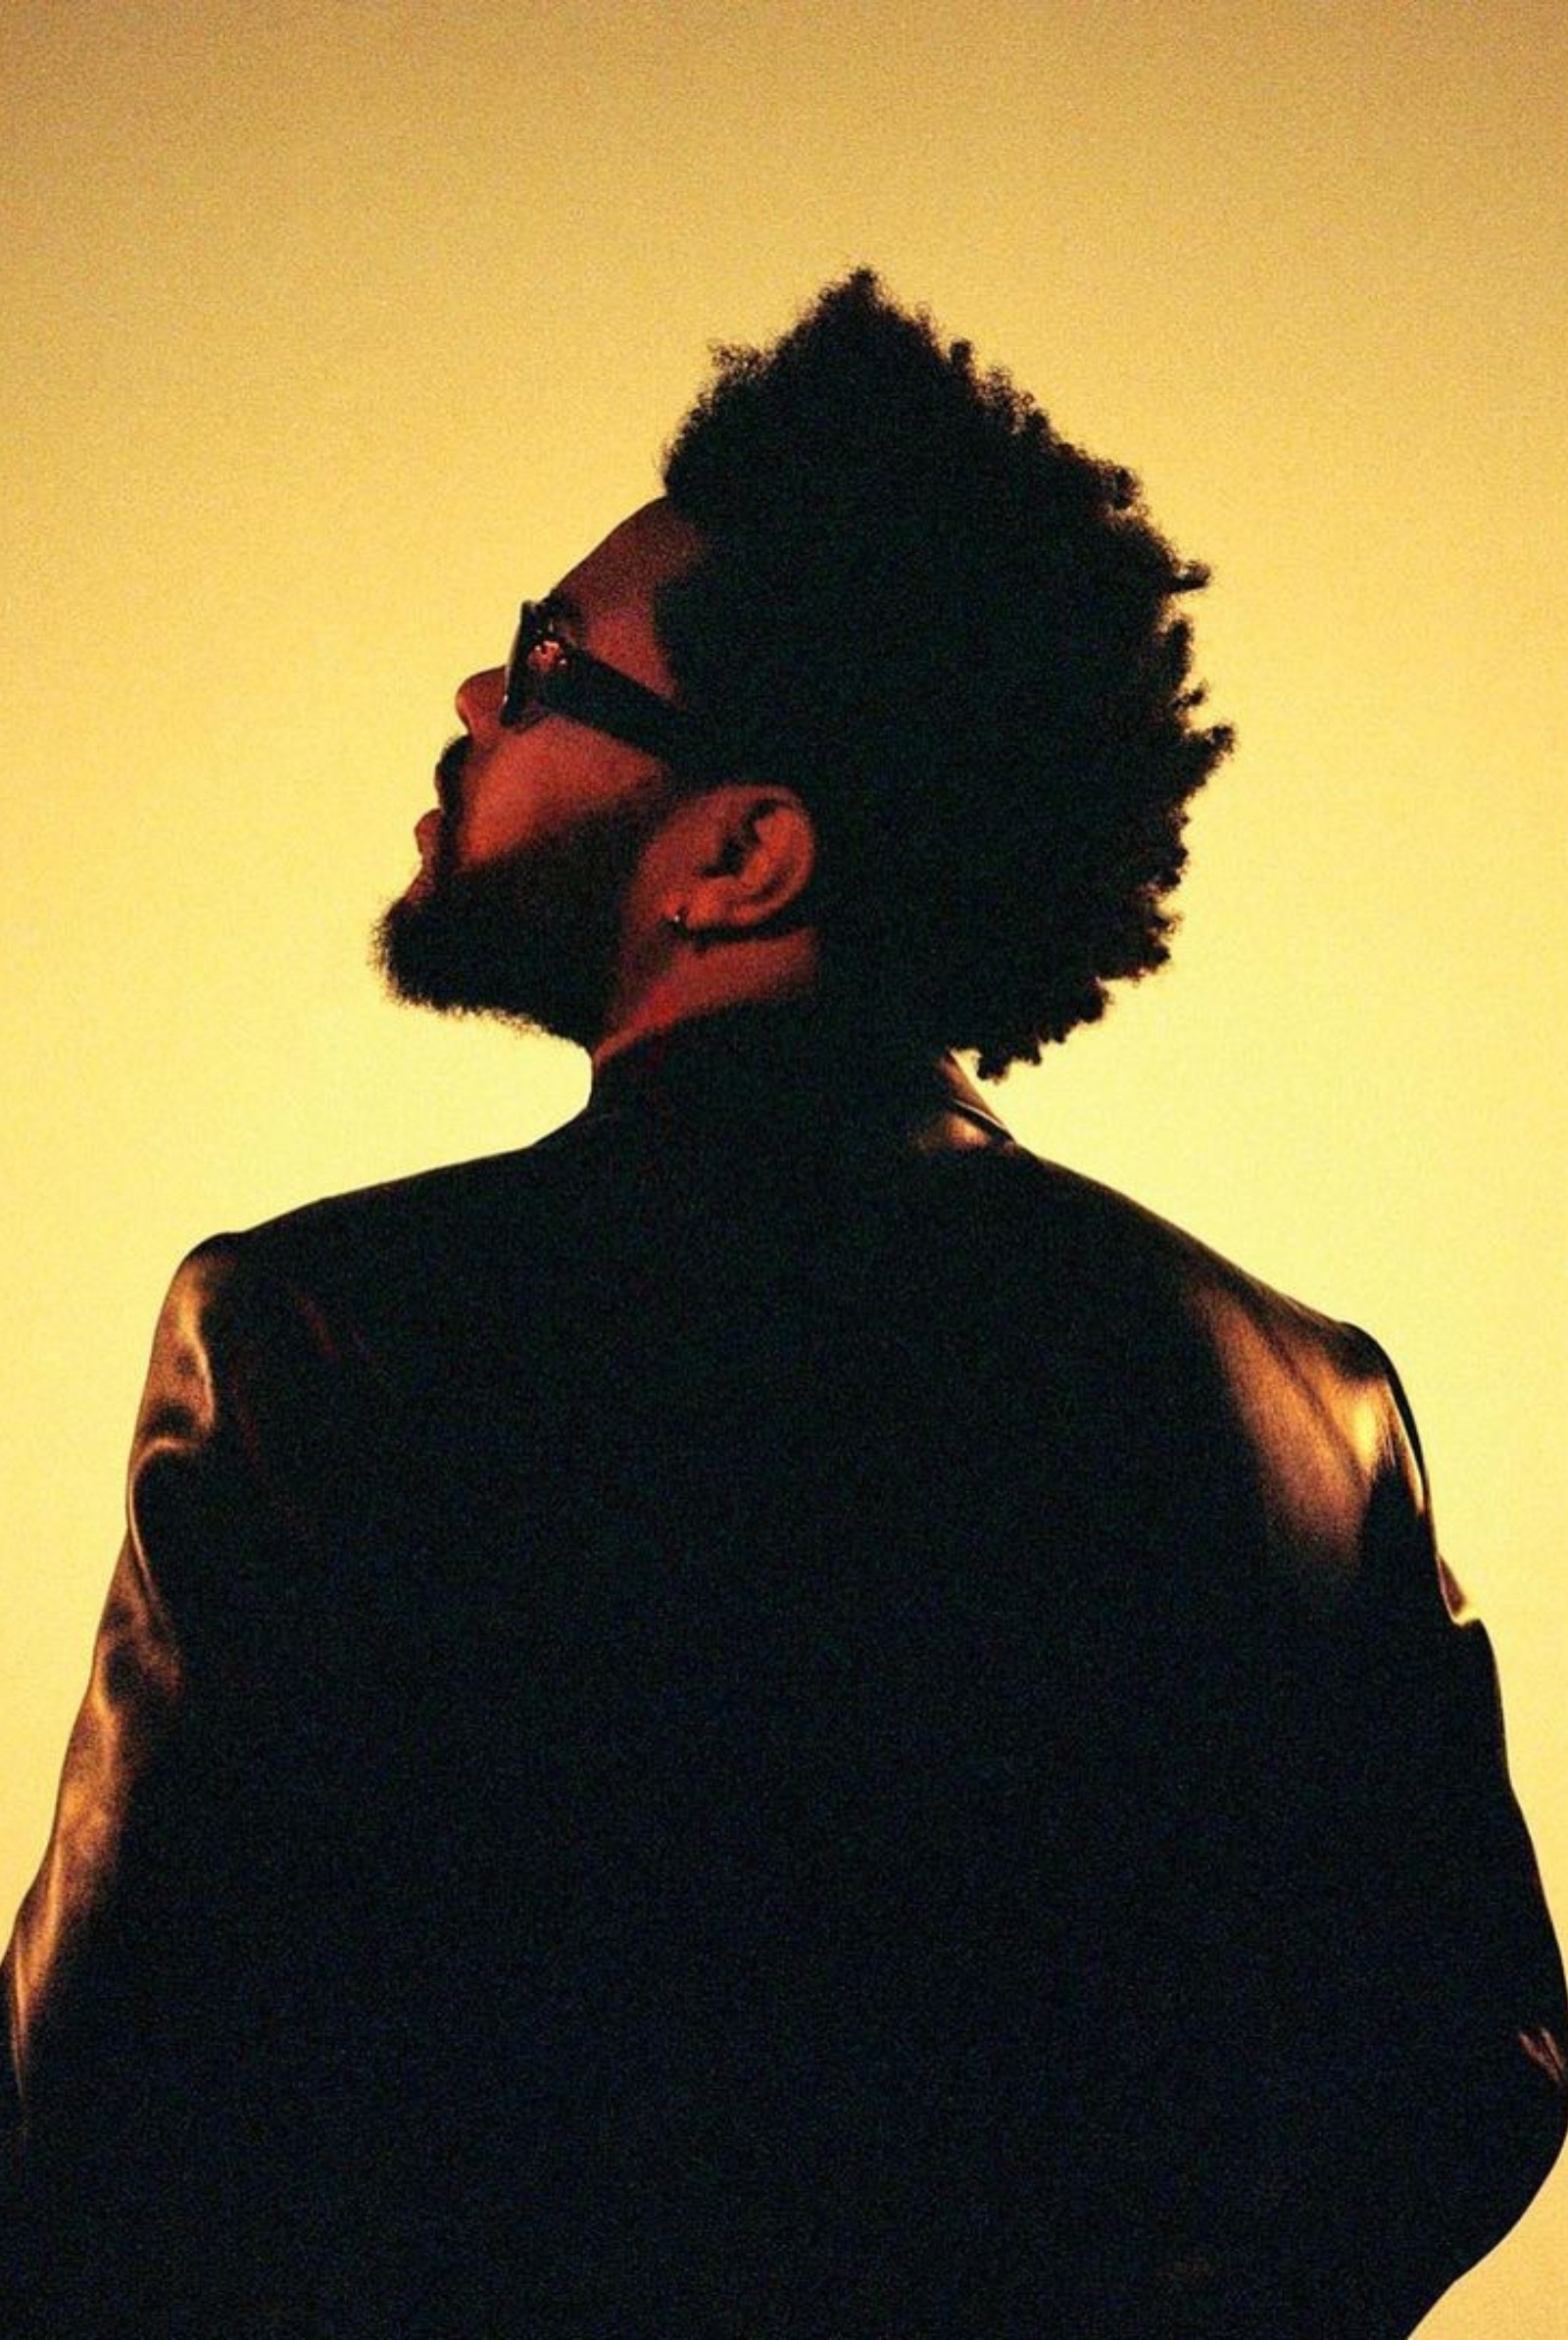 Abel Tesfaye The Weeknd Retiring His Popular Stage Name